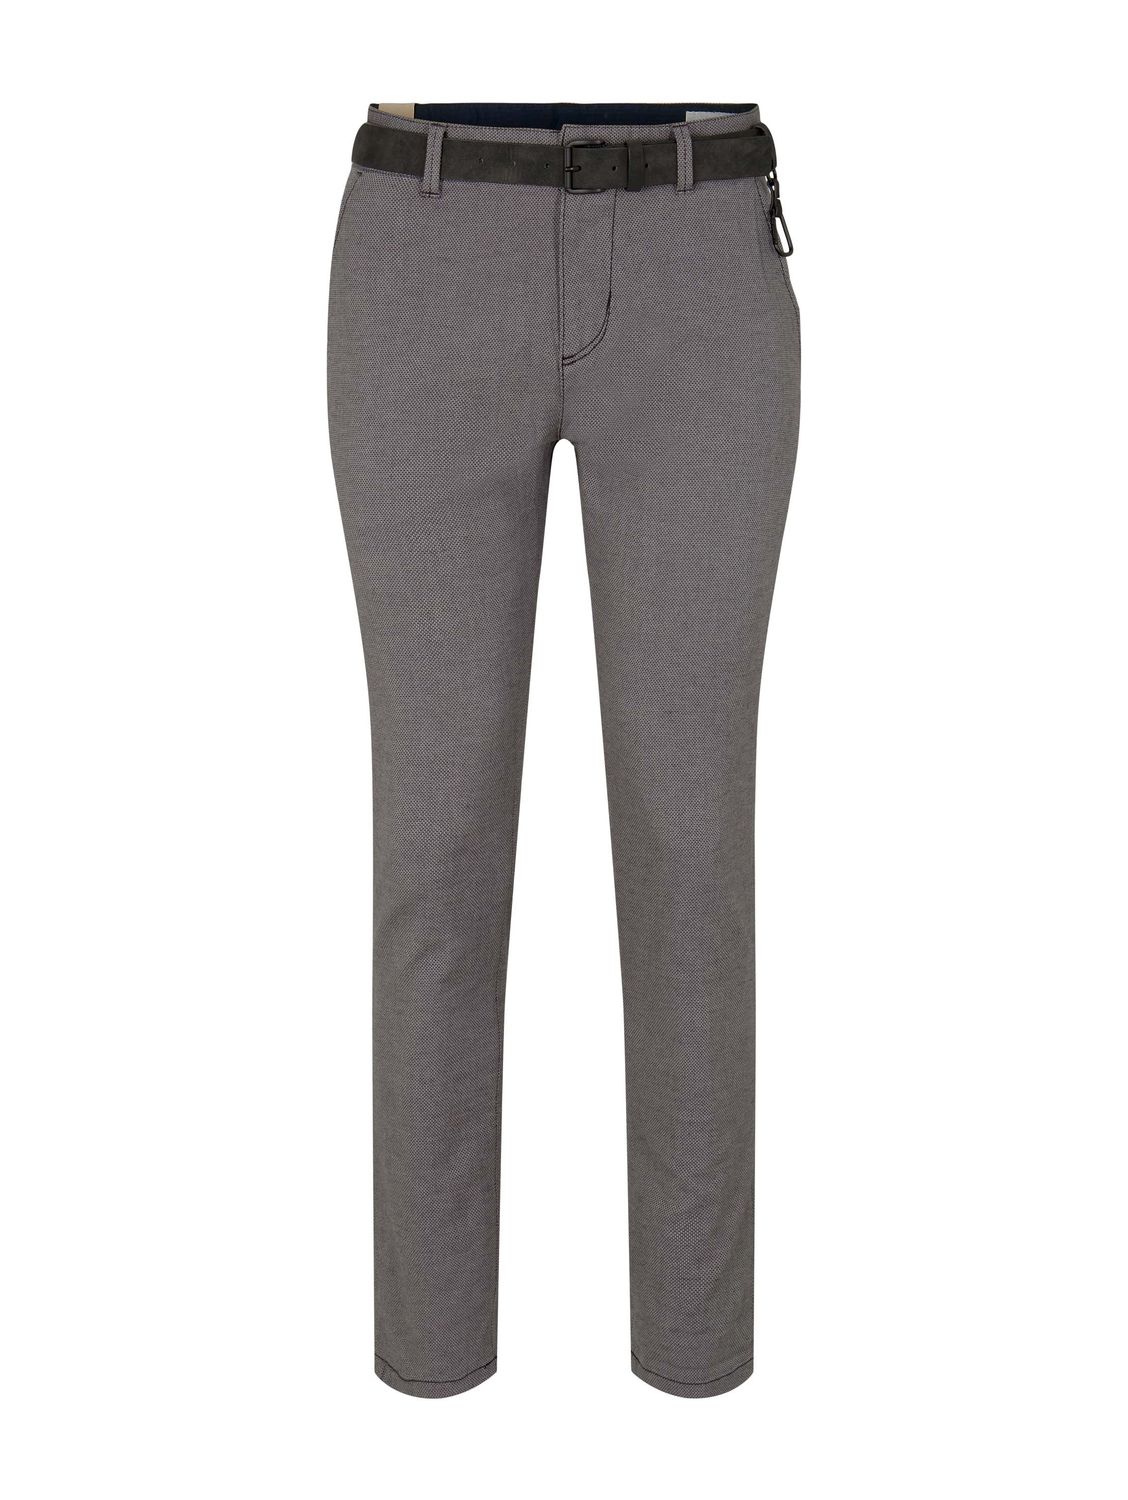 Тканевые брюки TOM TAILOR Denim Stoff/Chino Chino mit Gürtel regular/straight, серый толстовка tom tailor размер s серый